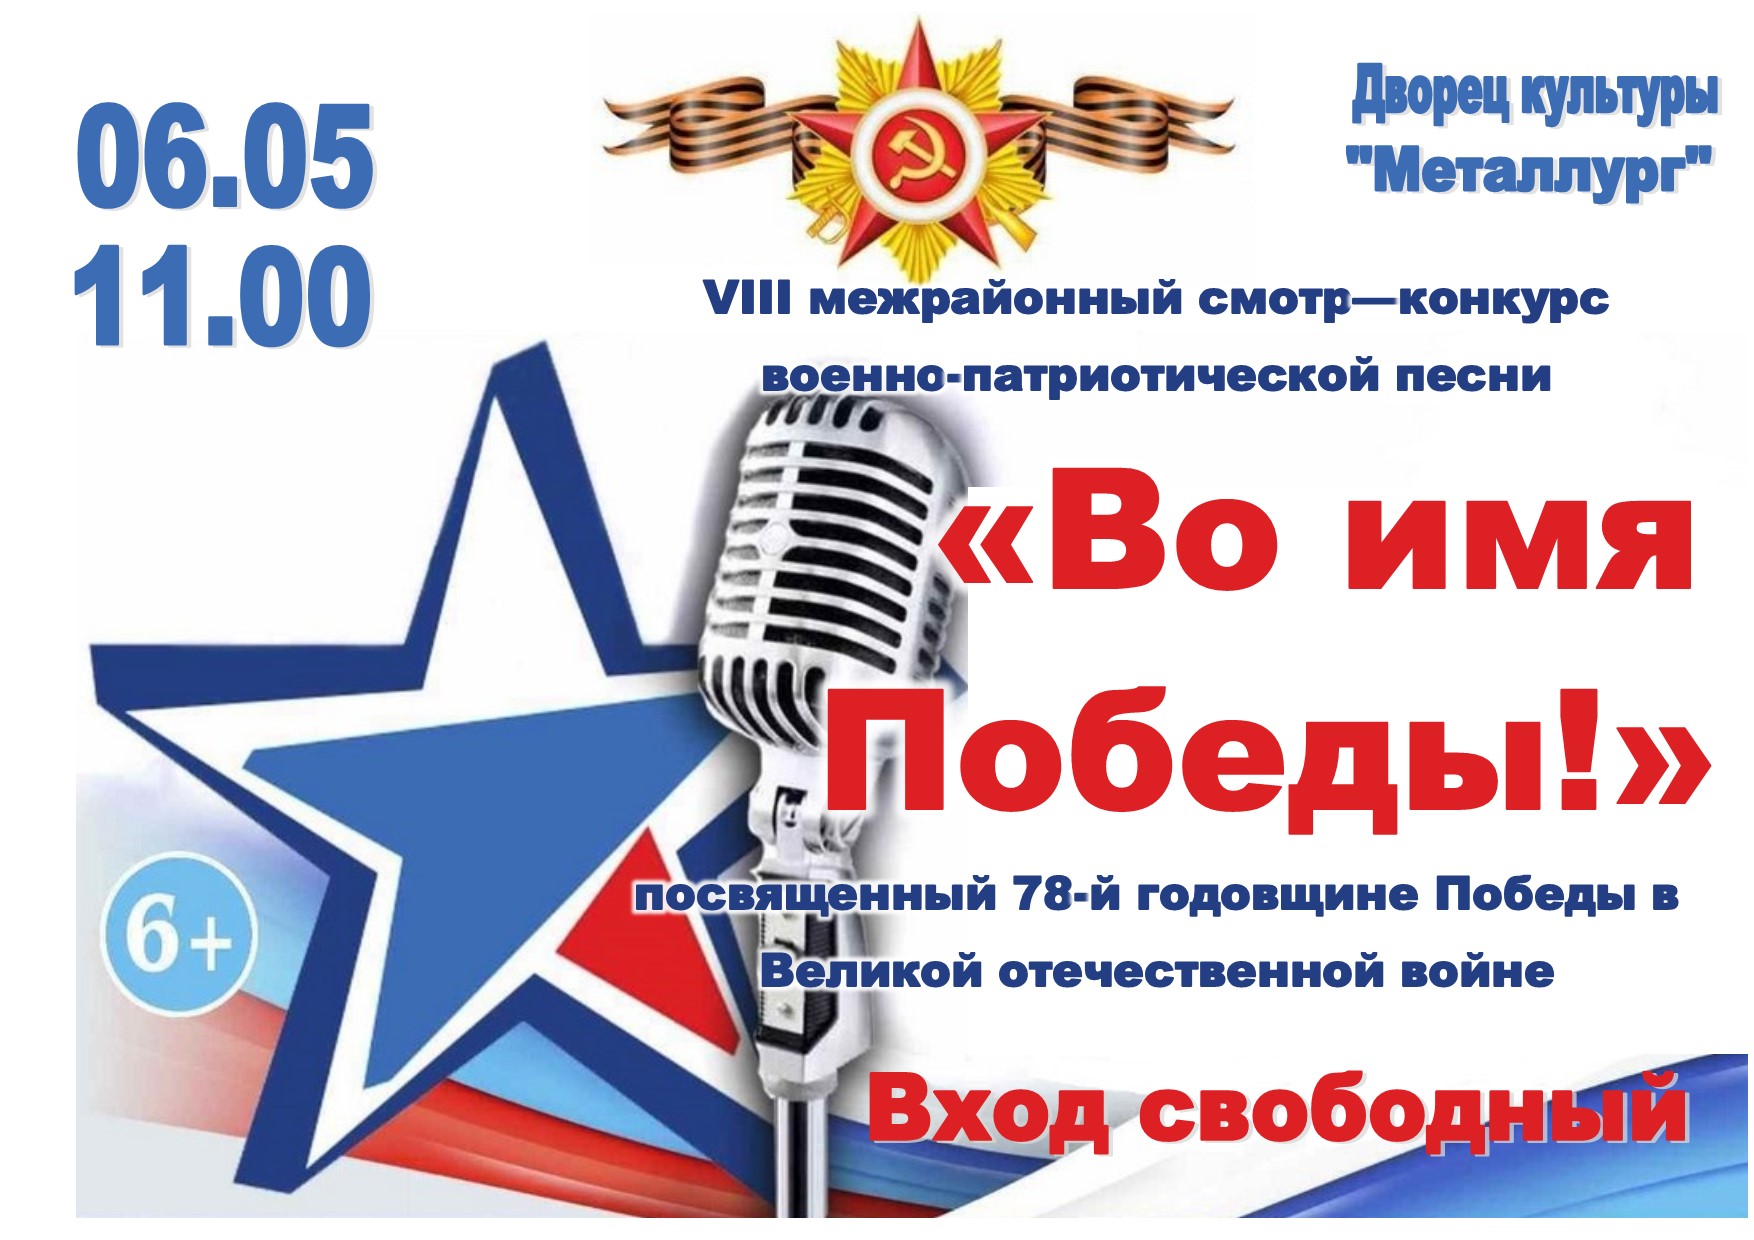 VIII Межрайонный смотр-конкурс военно-патриотической песни «Во имя Победы» (6+).